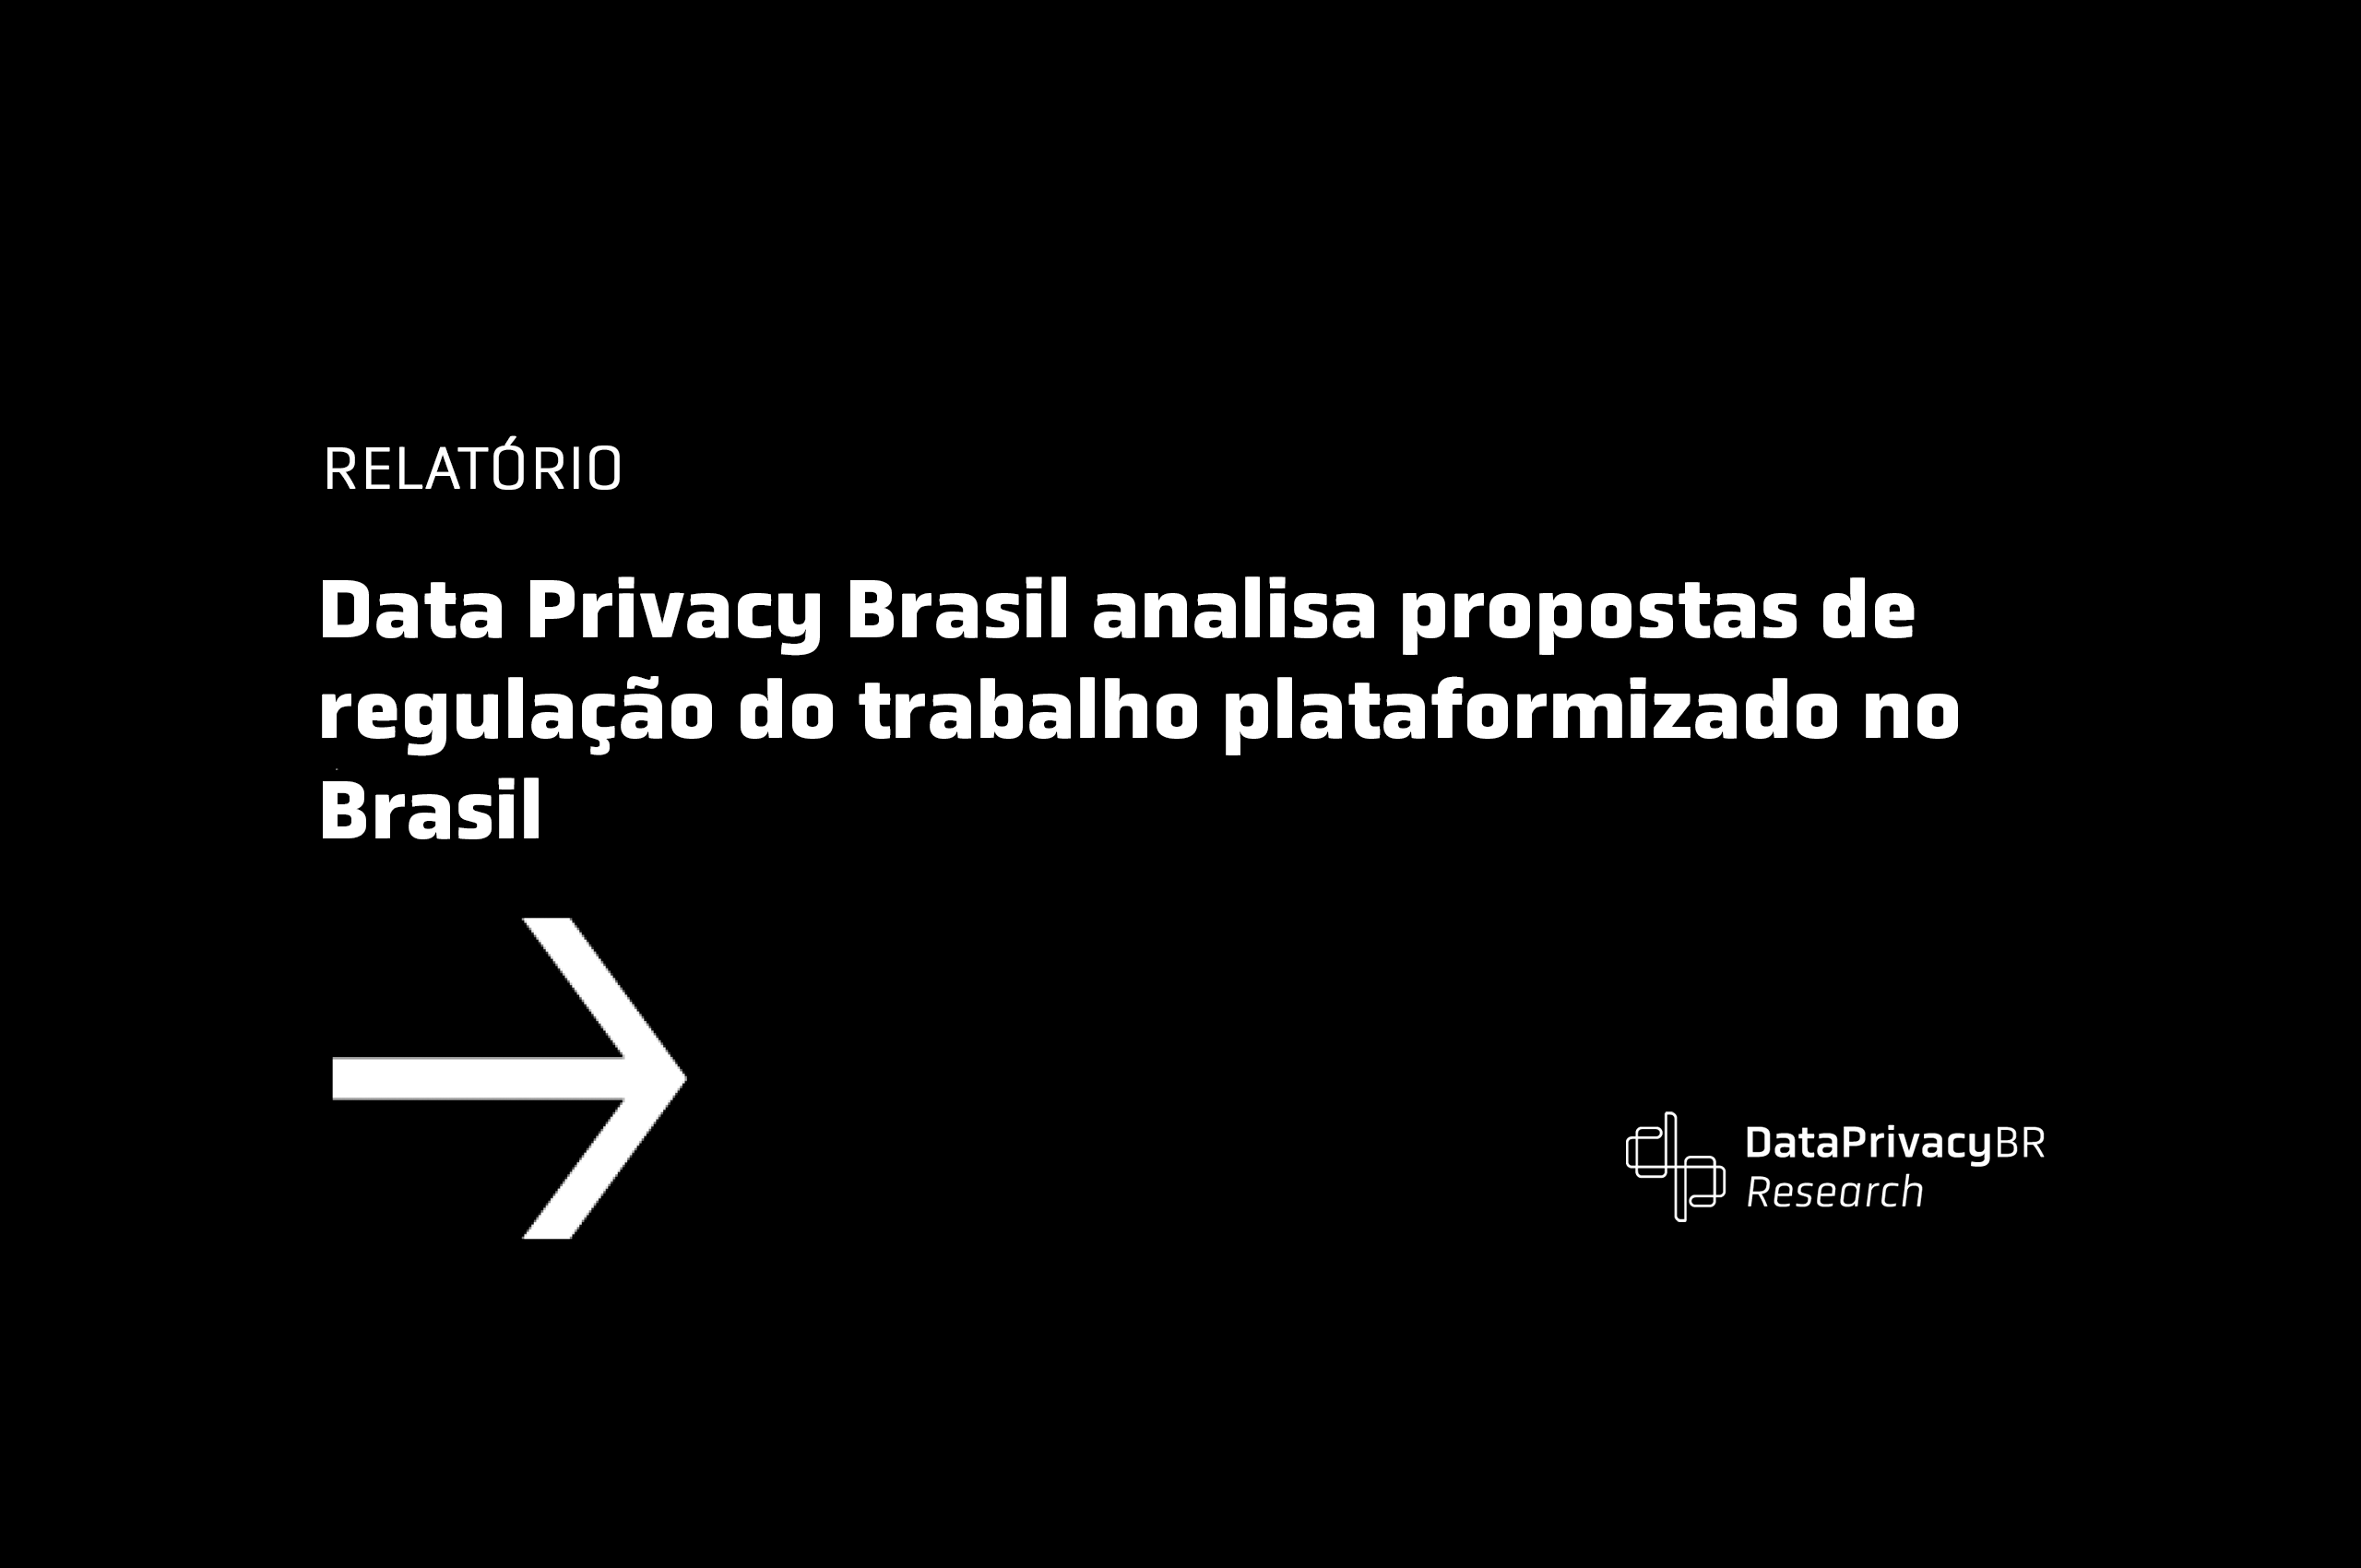 Data Privacy Brasil analisa propostas de regulação do trabalho plataformizado no Brasil